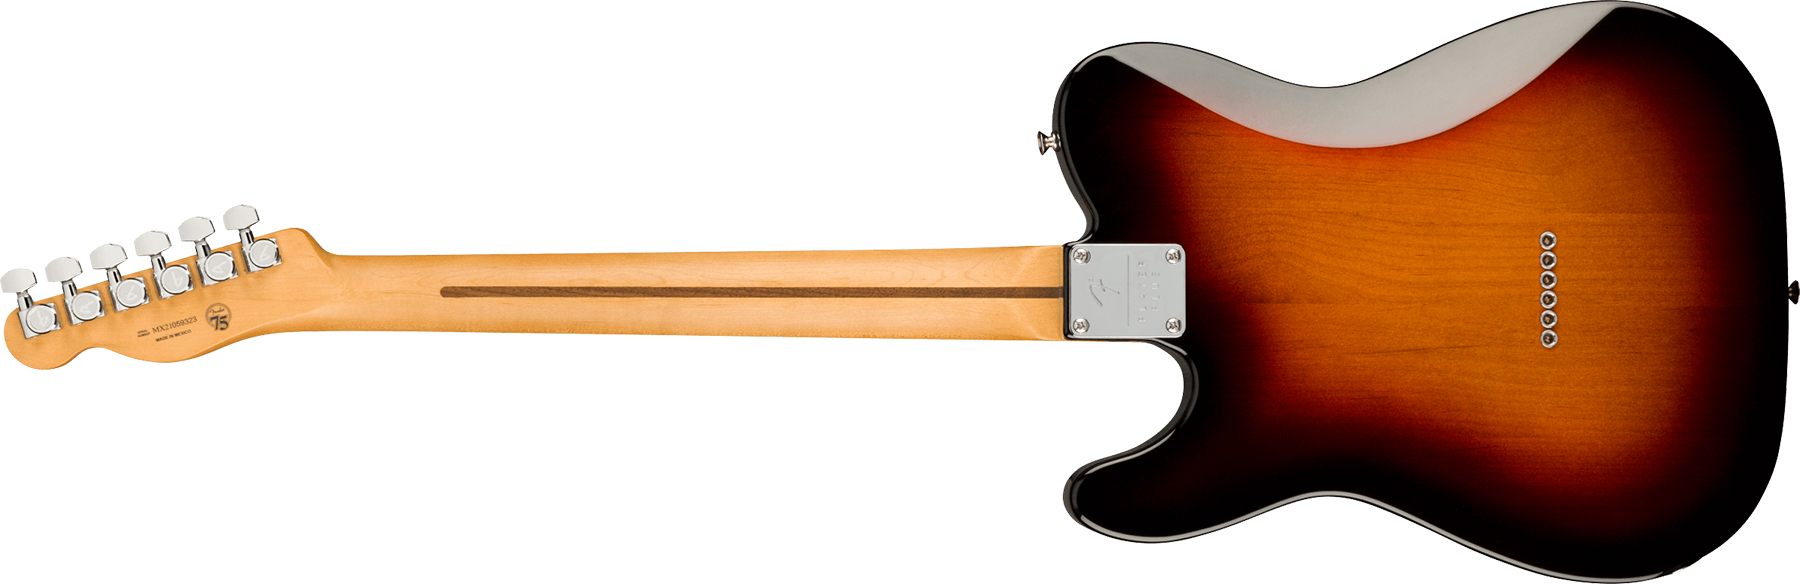 Fender Tele Player Plus Mex 2s Ht Mn - 3-color Sunburst - Tel shape electric guitar - Variation 1